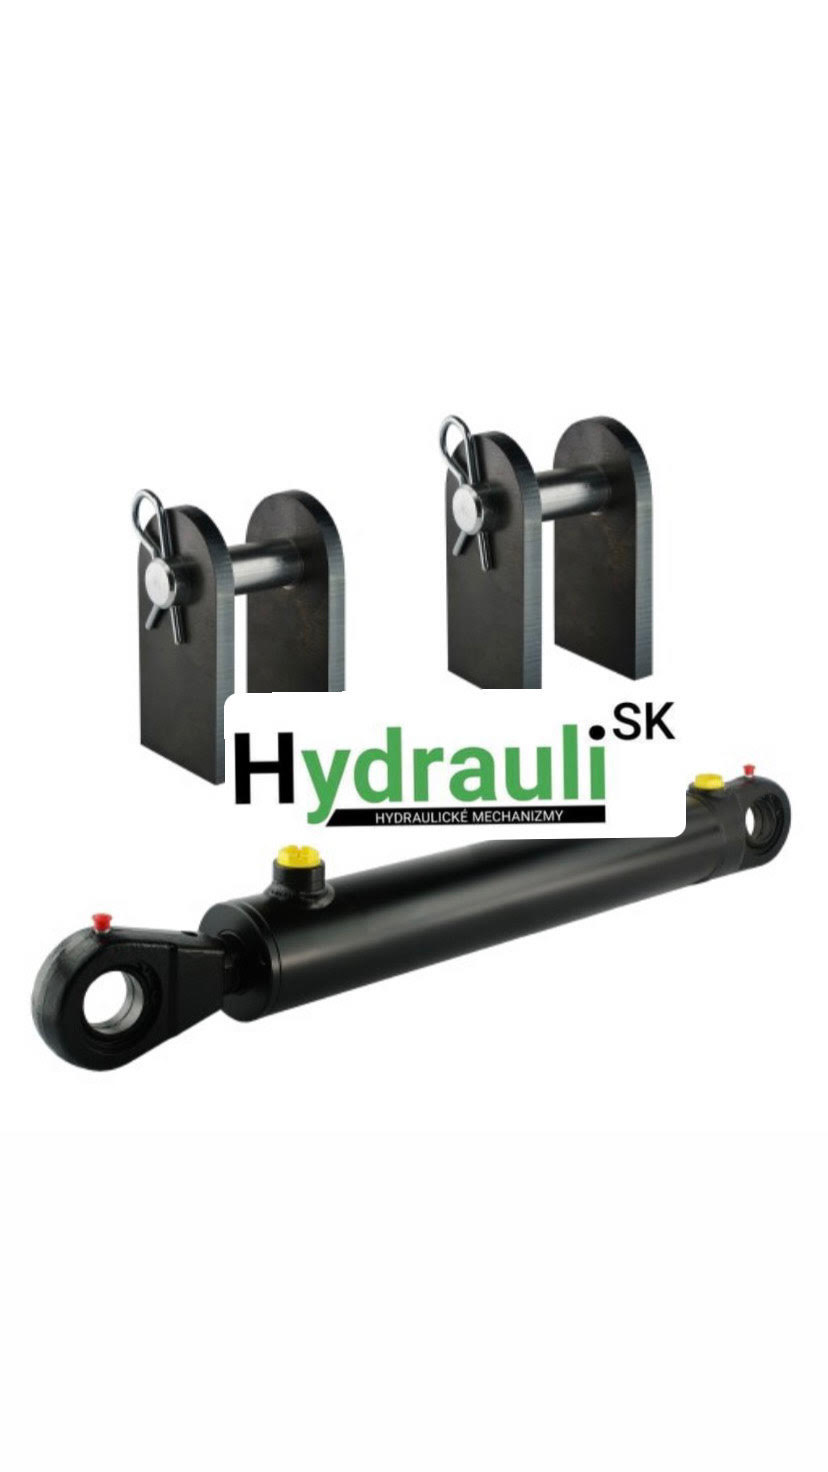 Hydraulick valec CJ2F 50/32/640 U30 M